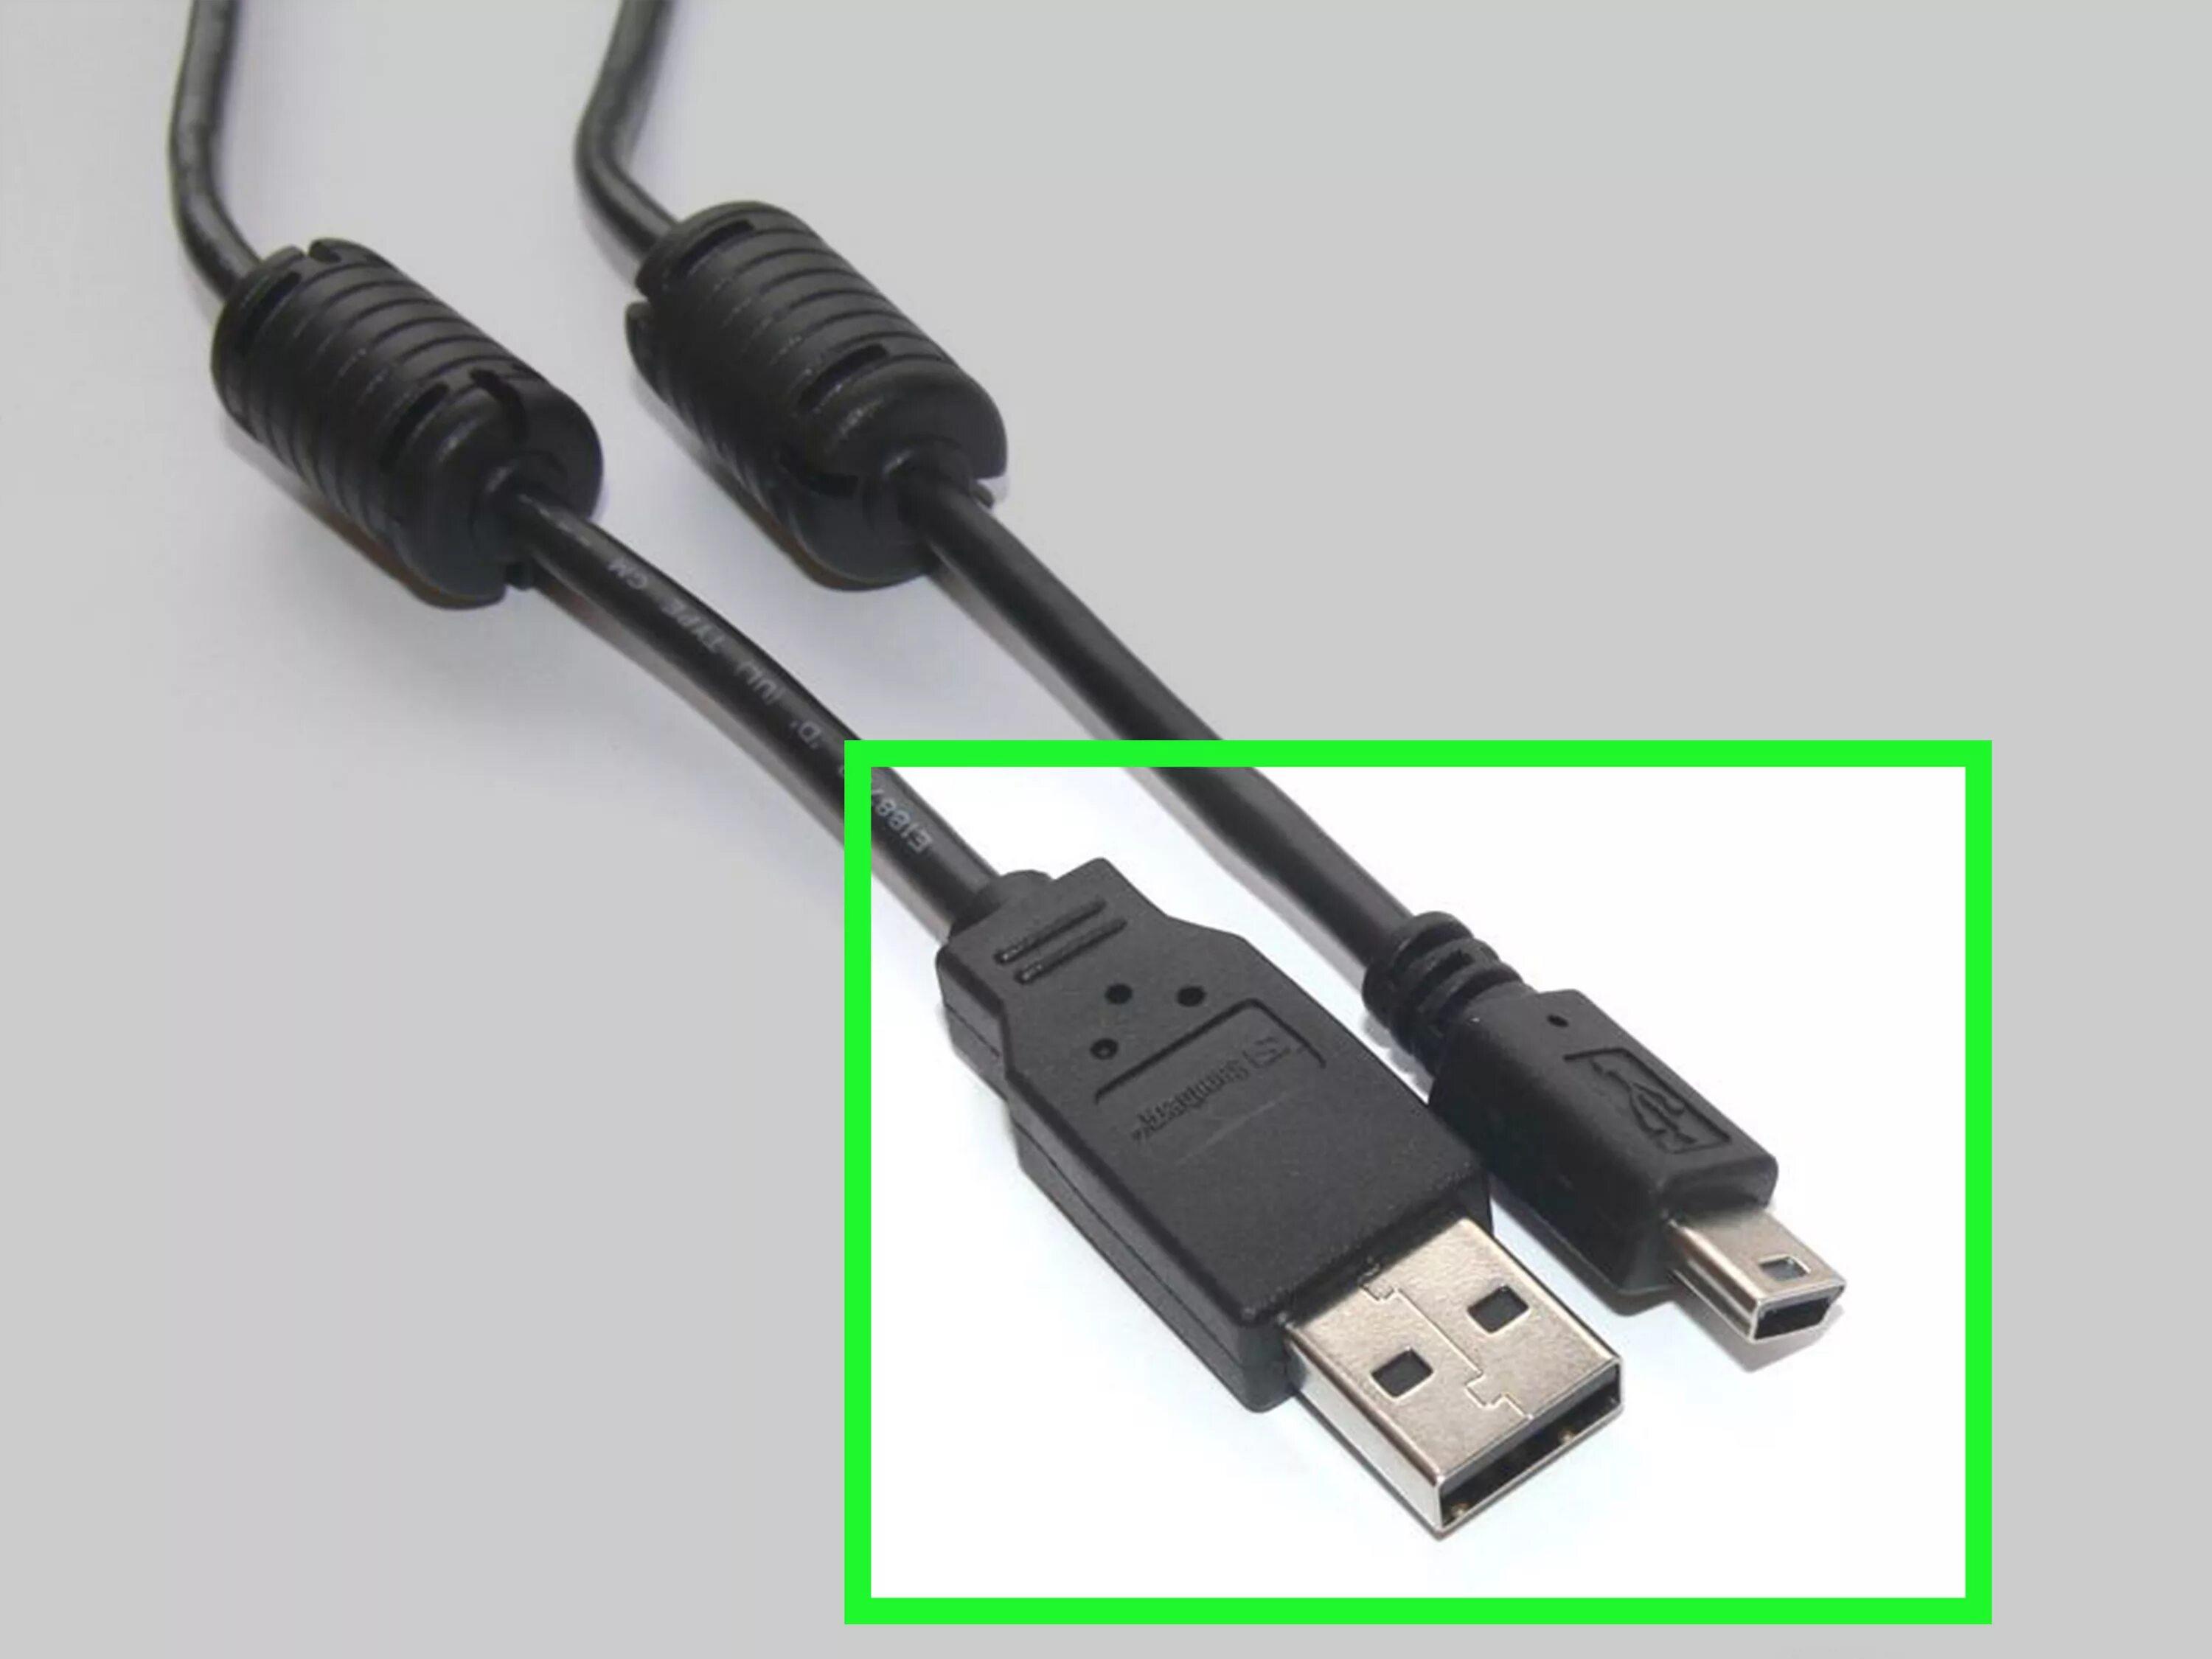 Пс3 провод. Кабель для зарядки джойстика ps3. USB кабель для джойстика ps3. Кабели для зарядки джойстика на сони плейстейшен 3. Зарядка для джойстика пс3.